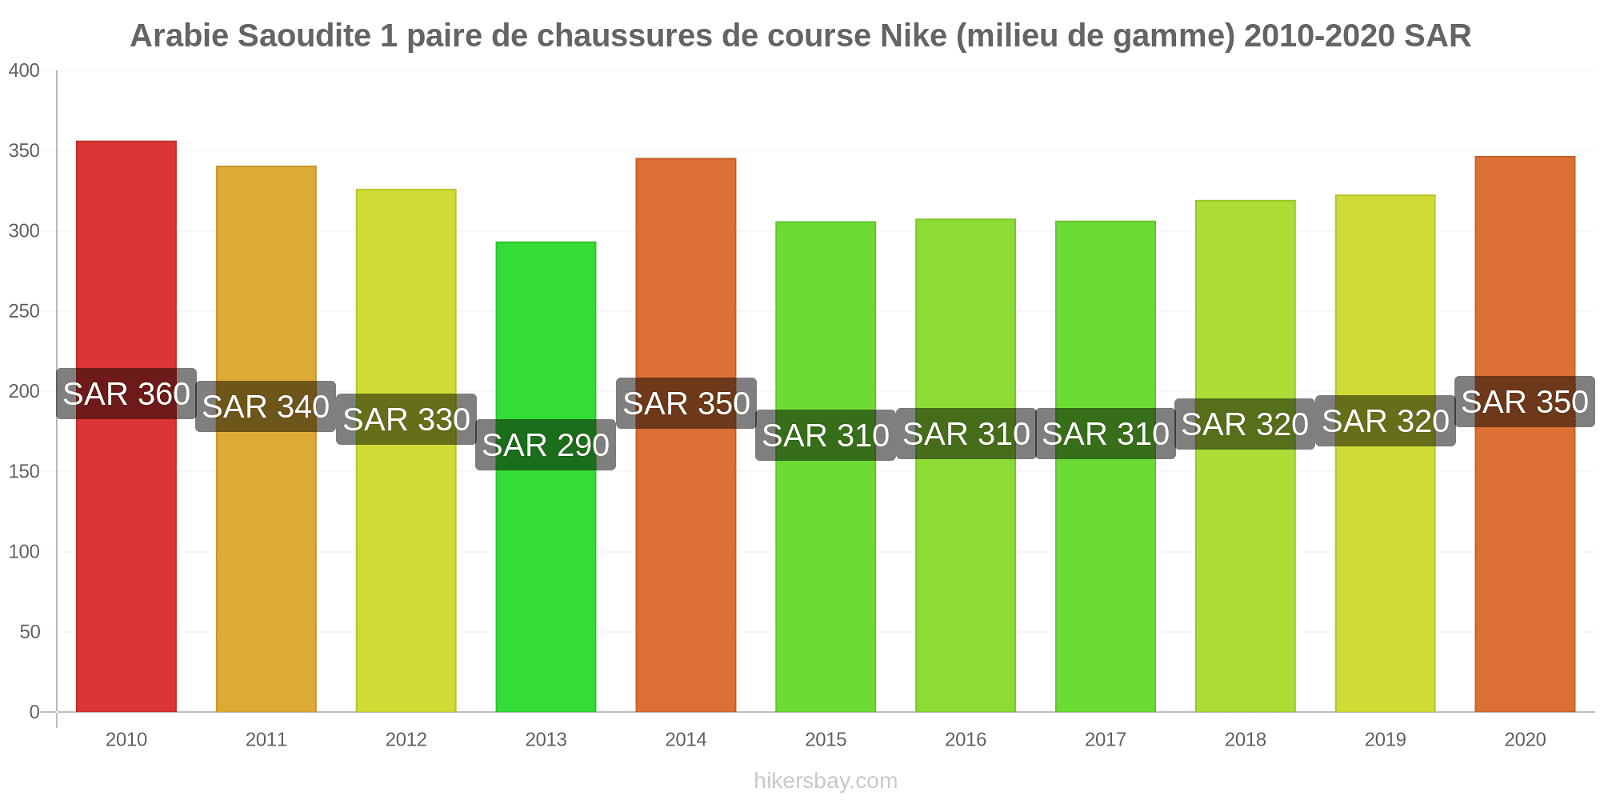 Arabie Saoudite changements de prix 1 paire de chaussures de course Nike (milieu de gamme) hikersbay.com